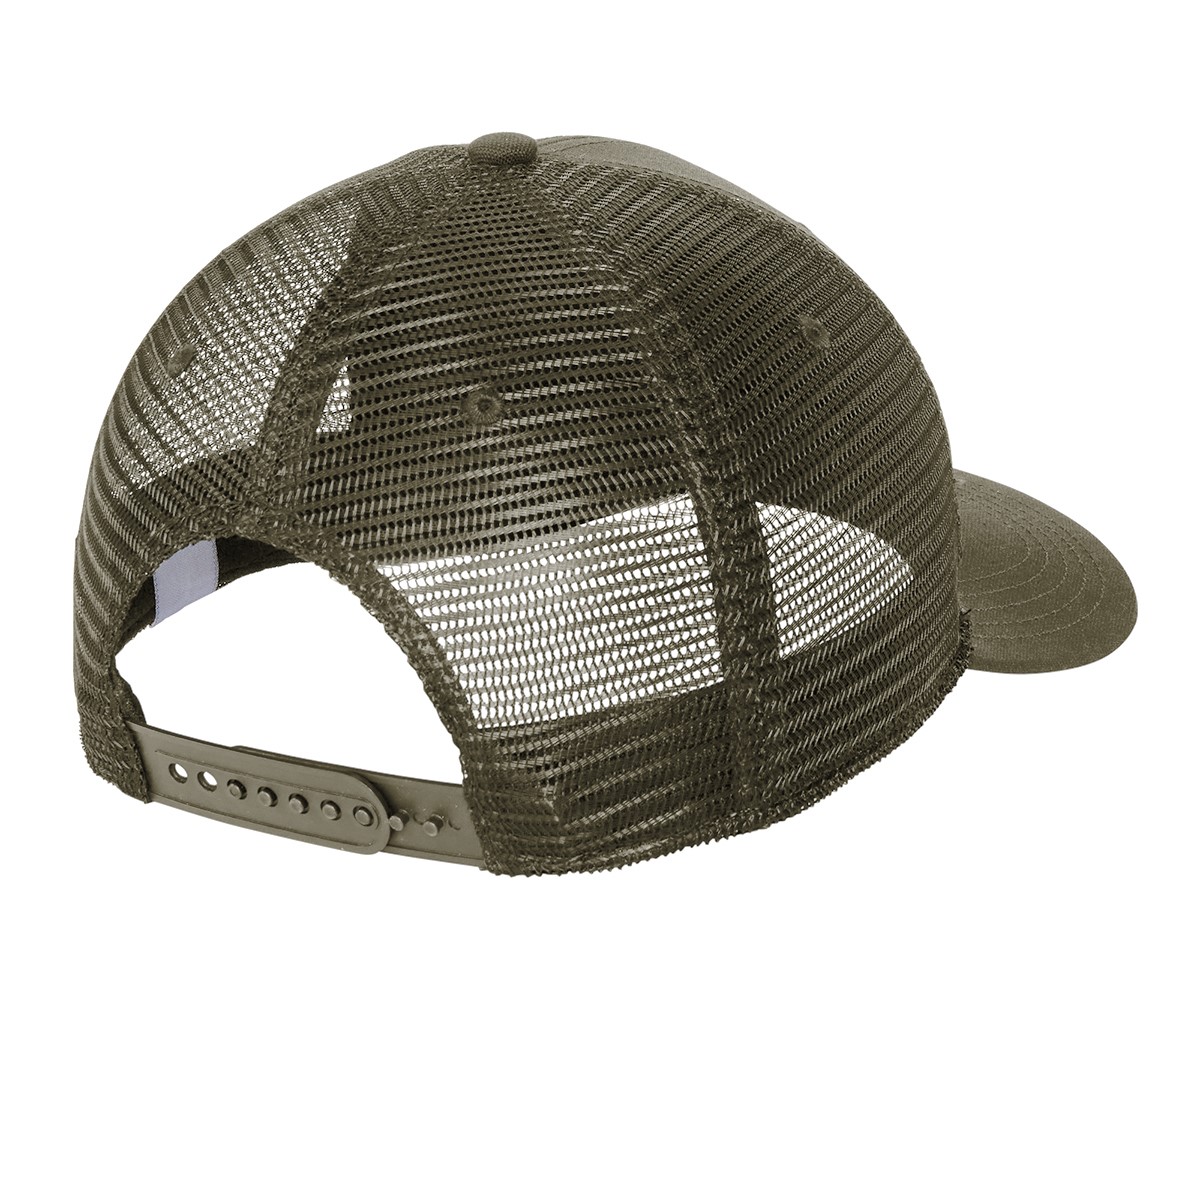 Hats | Your Trucker Trucker Head Custom Cover Caps |